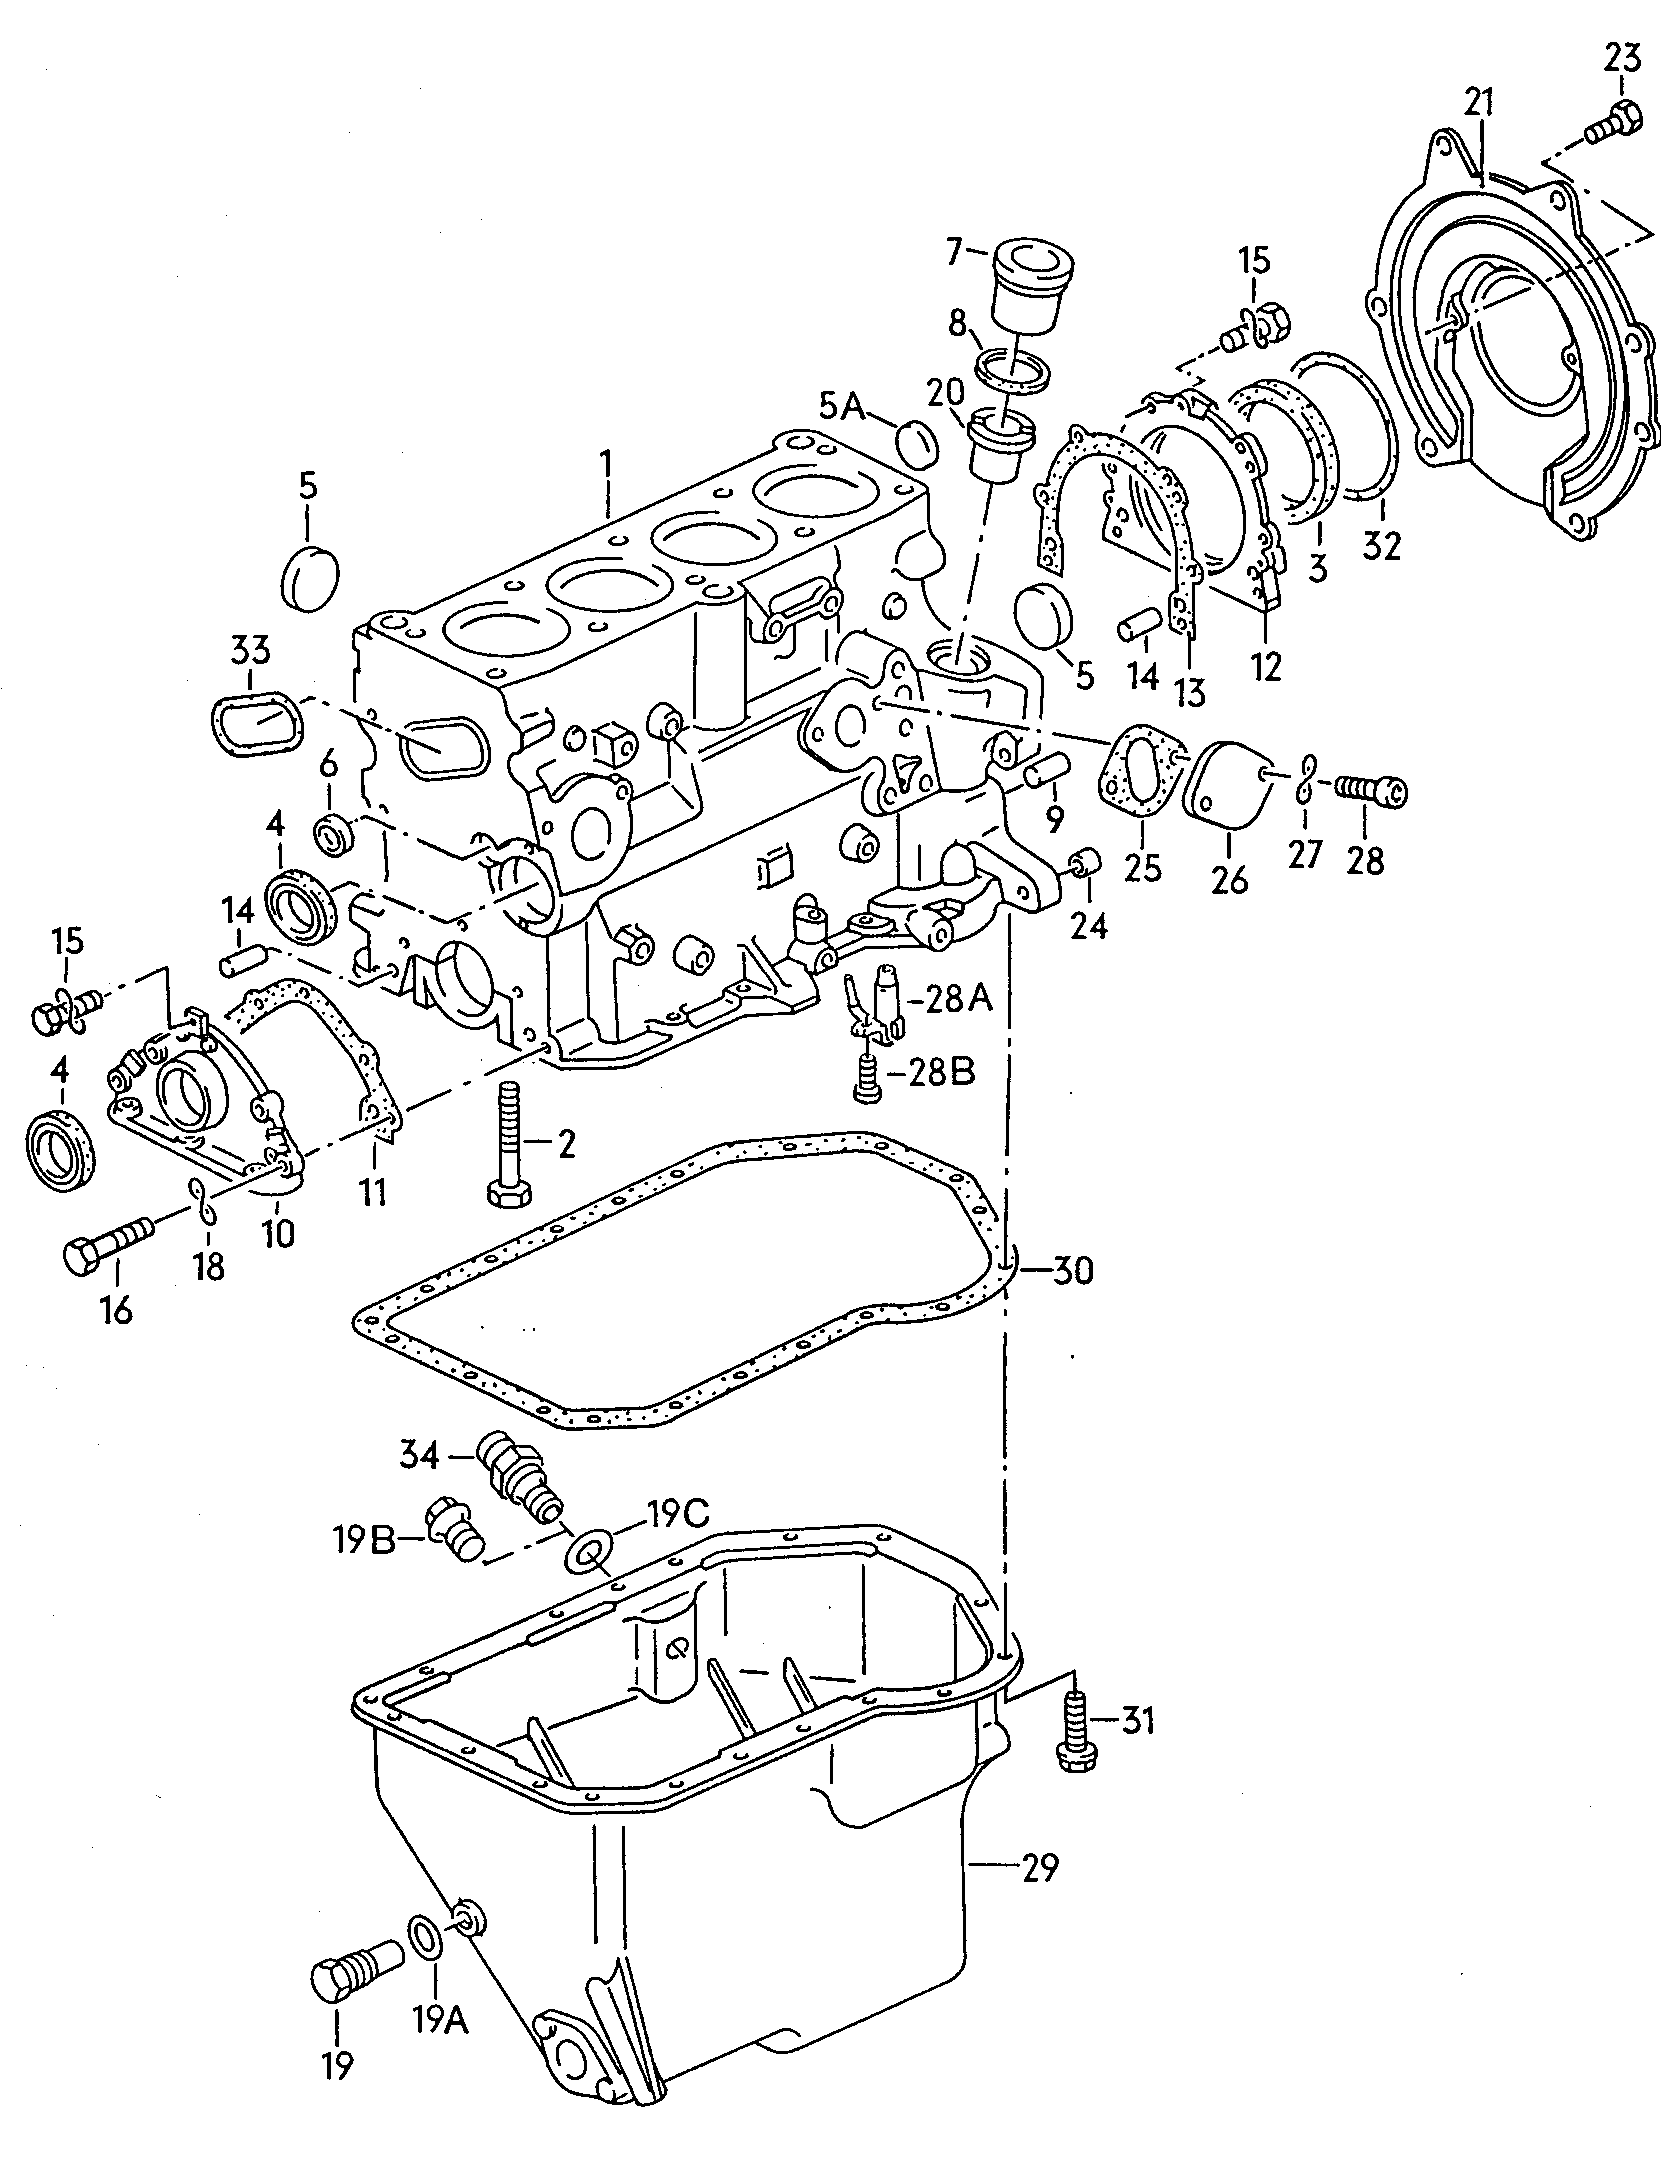 Befestigungsteile fuer Motor
und Getriebe - Typ 2/syncro(T2)  